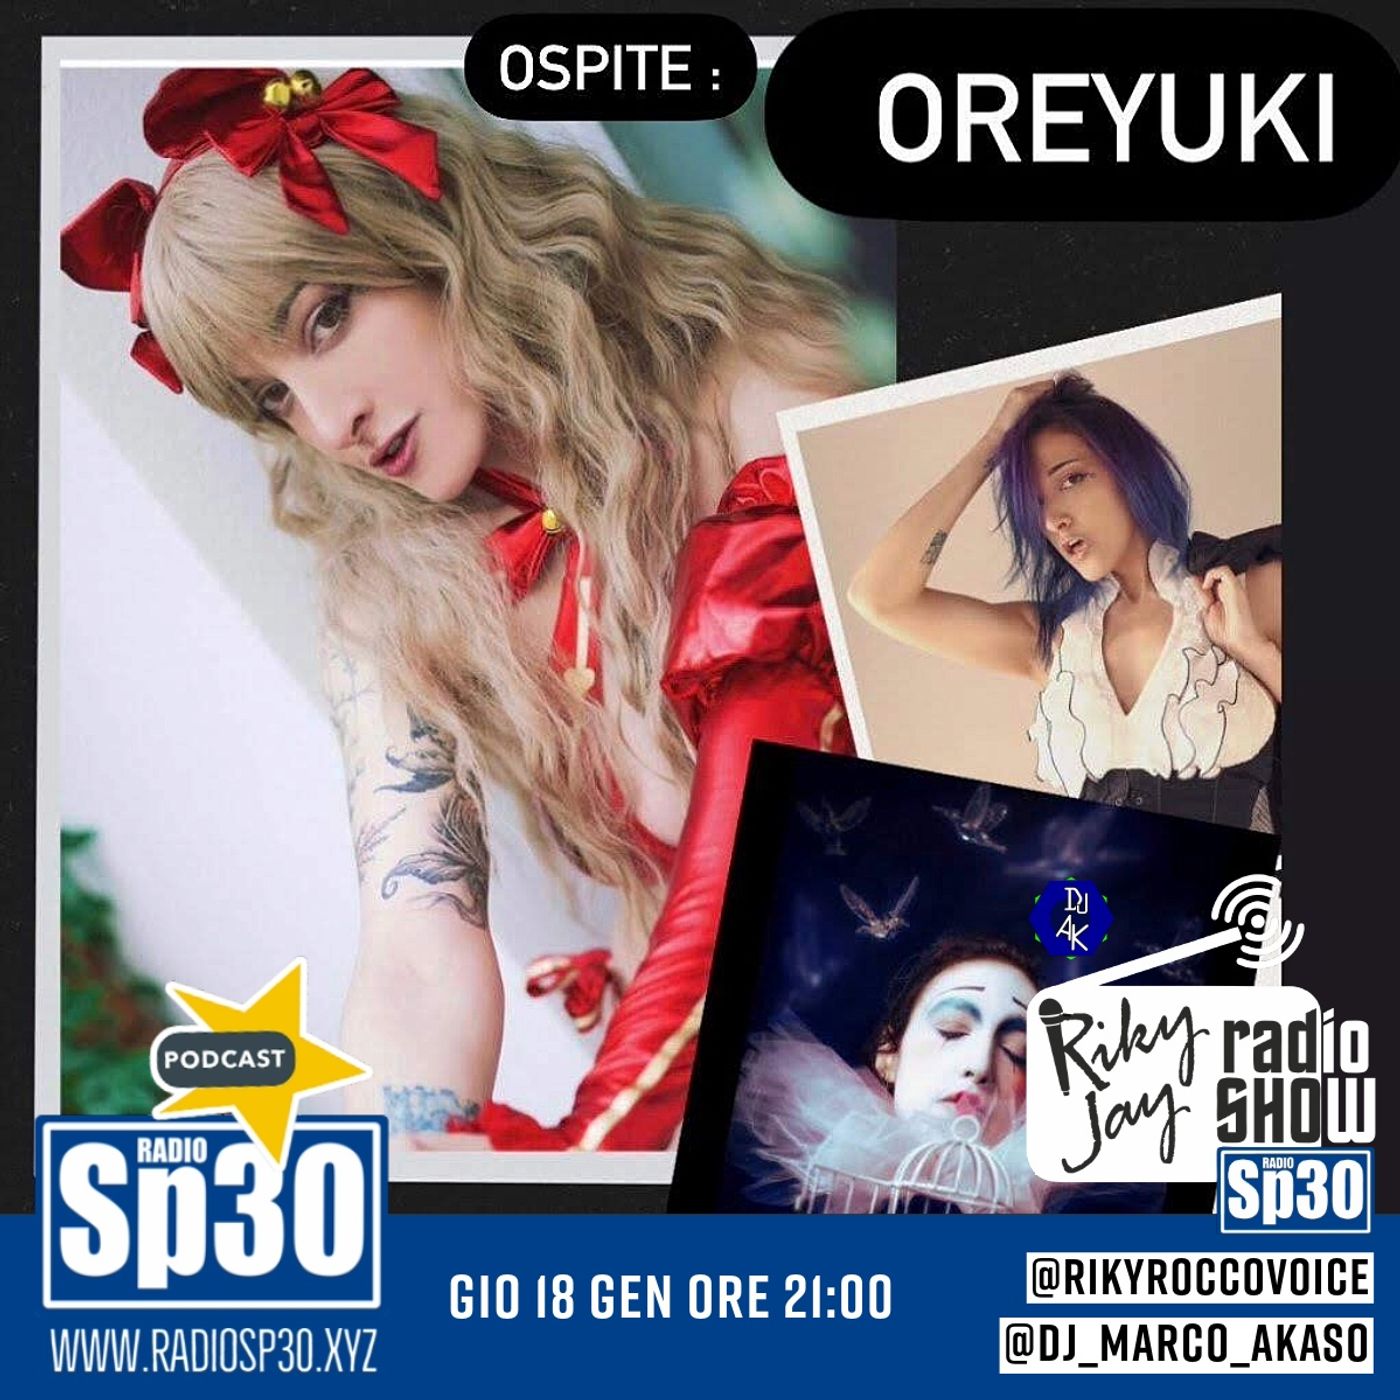 RikyJay Radio Show - ST.5 N.15 - Ospite Oreyuki